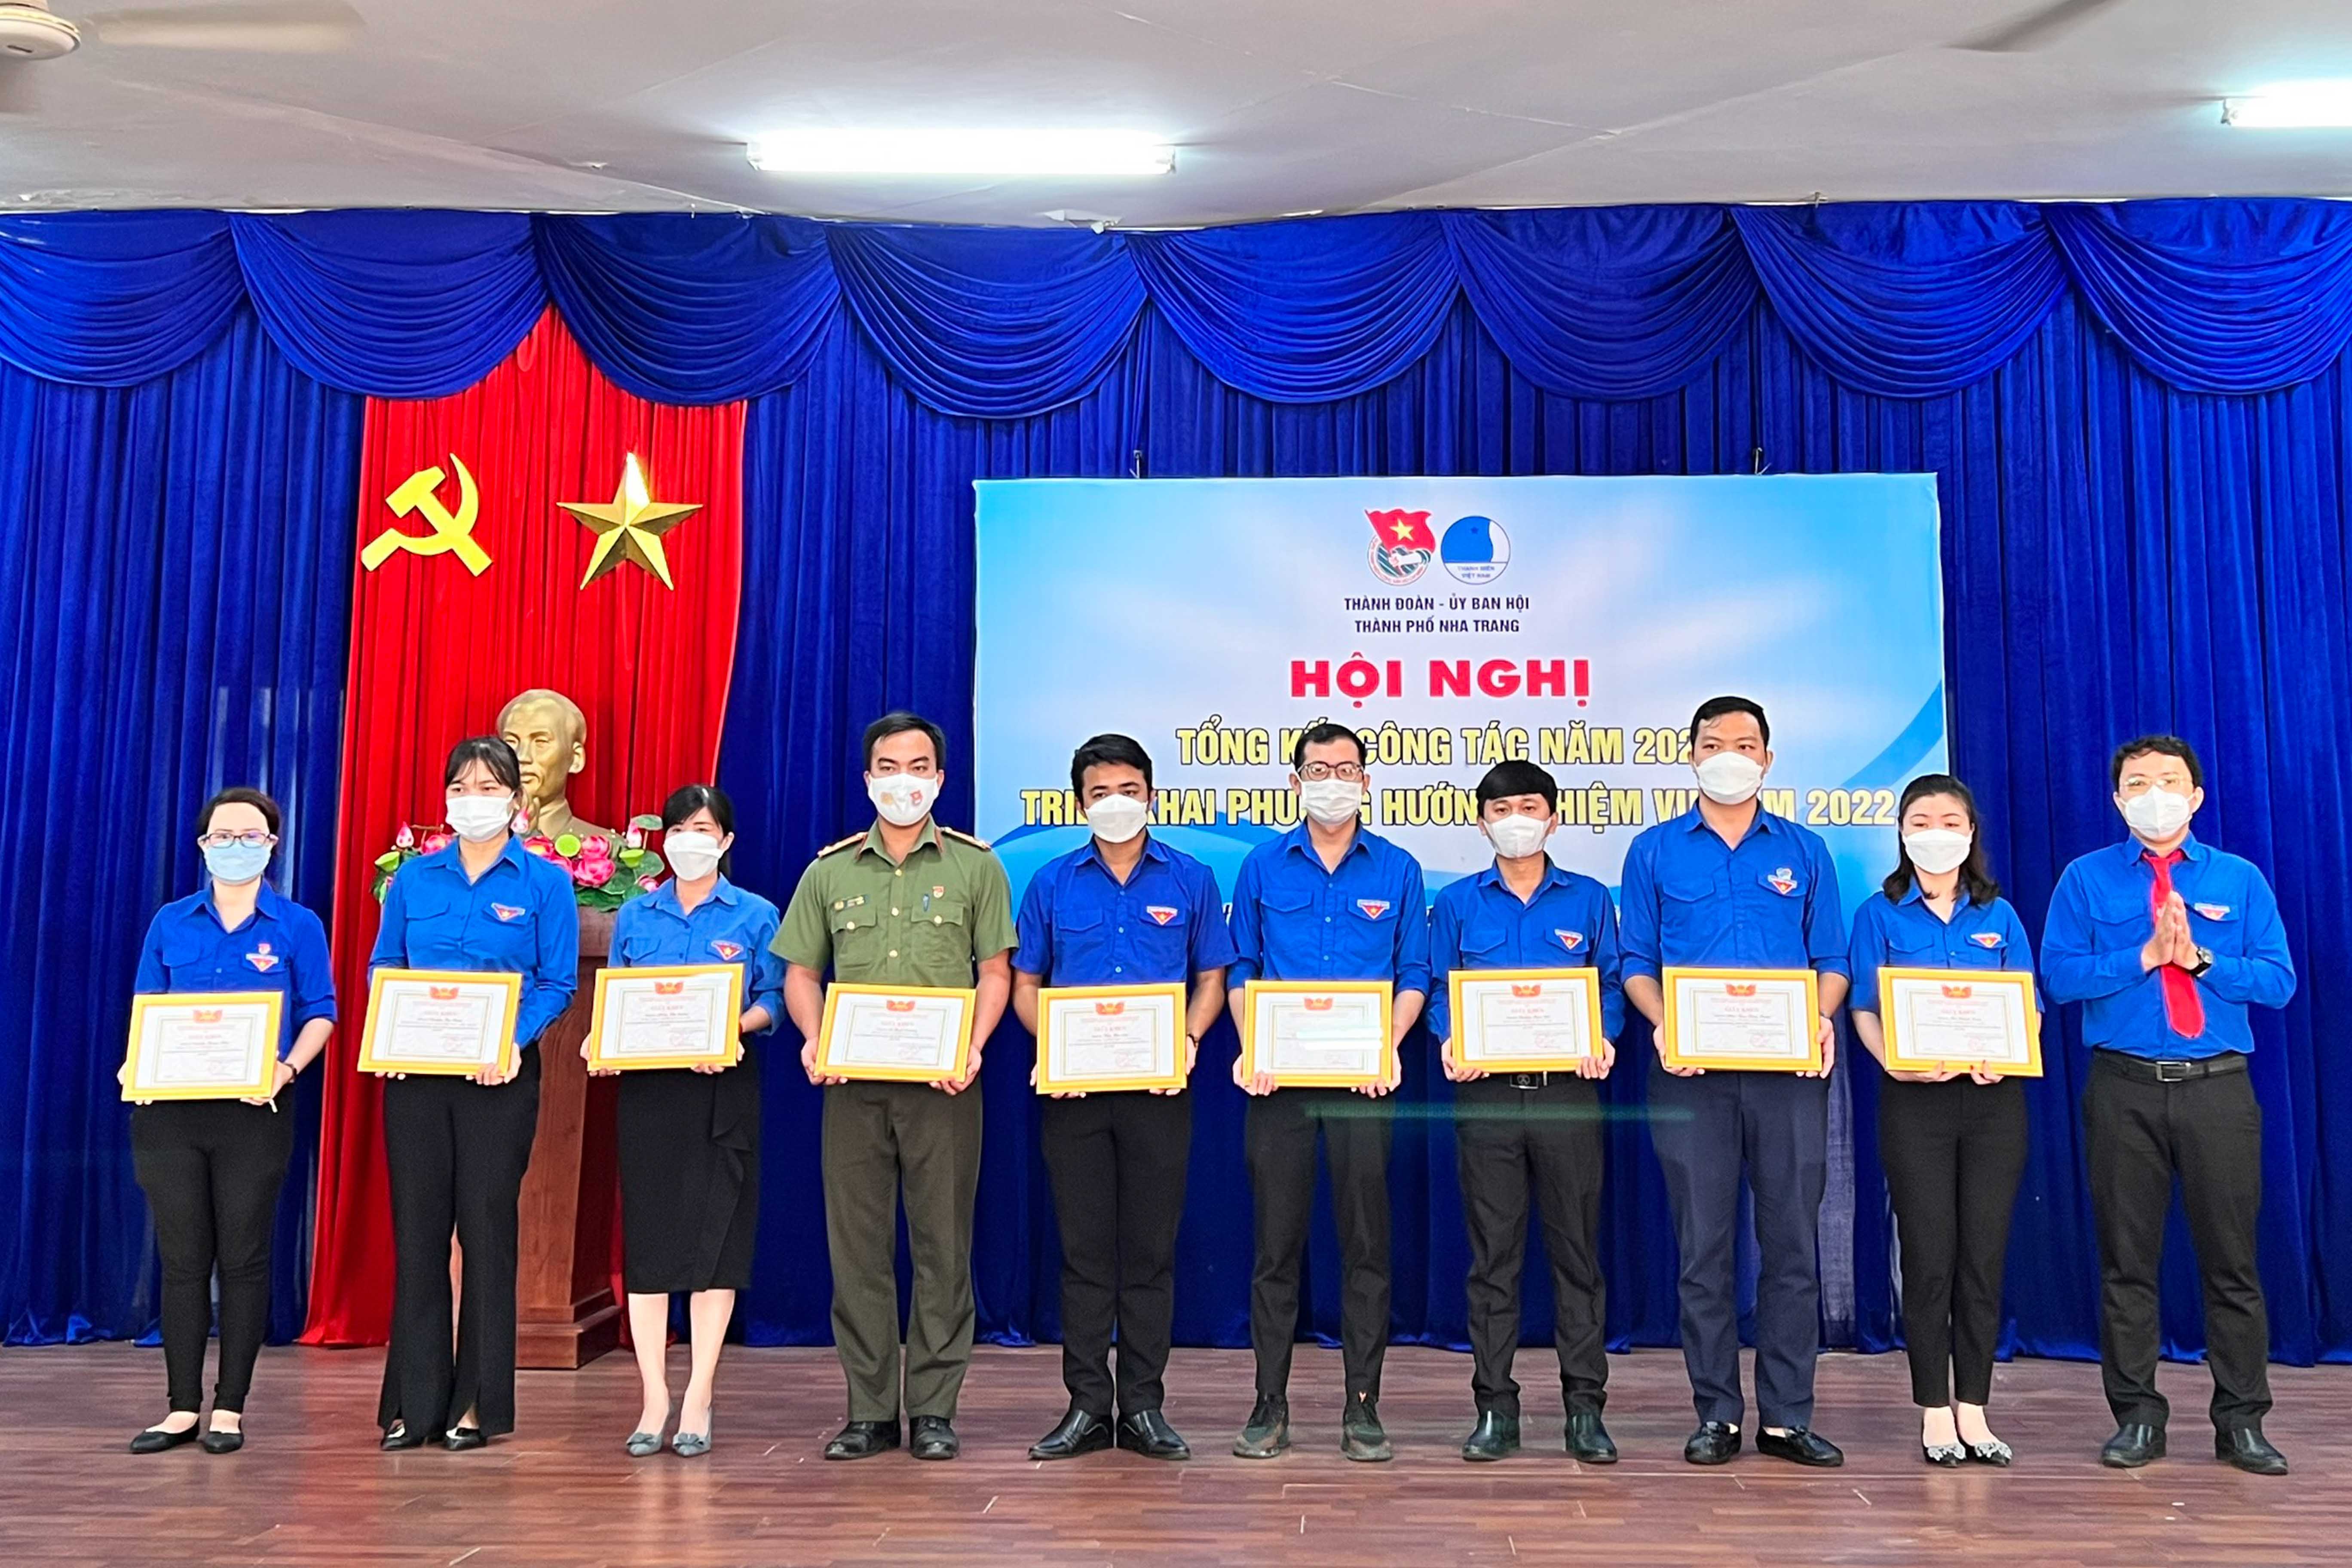 Thành đoàn Nha Trang khen thưởng các tập thể, cá nhân xuất sắc